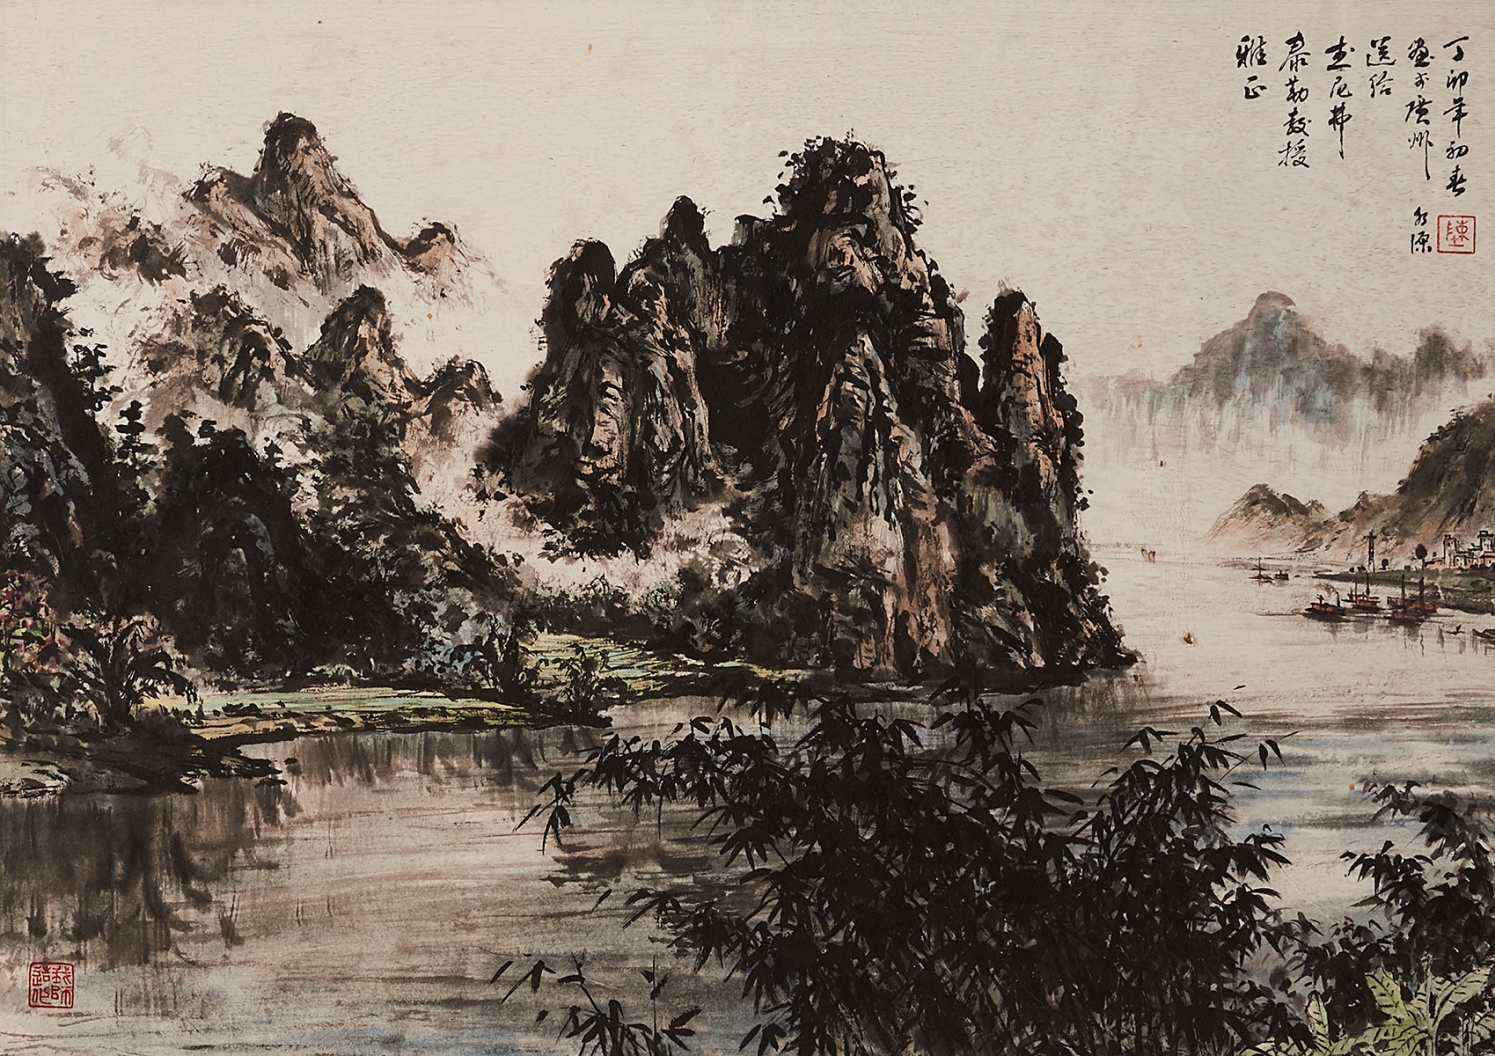 20th Century Chinese Artist - Shapiro Auctioneers